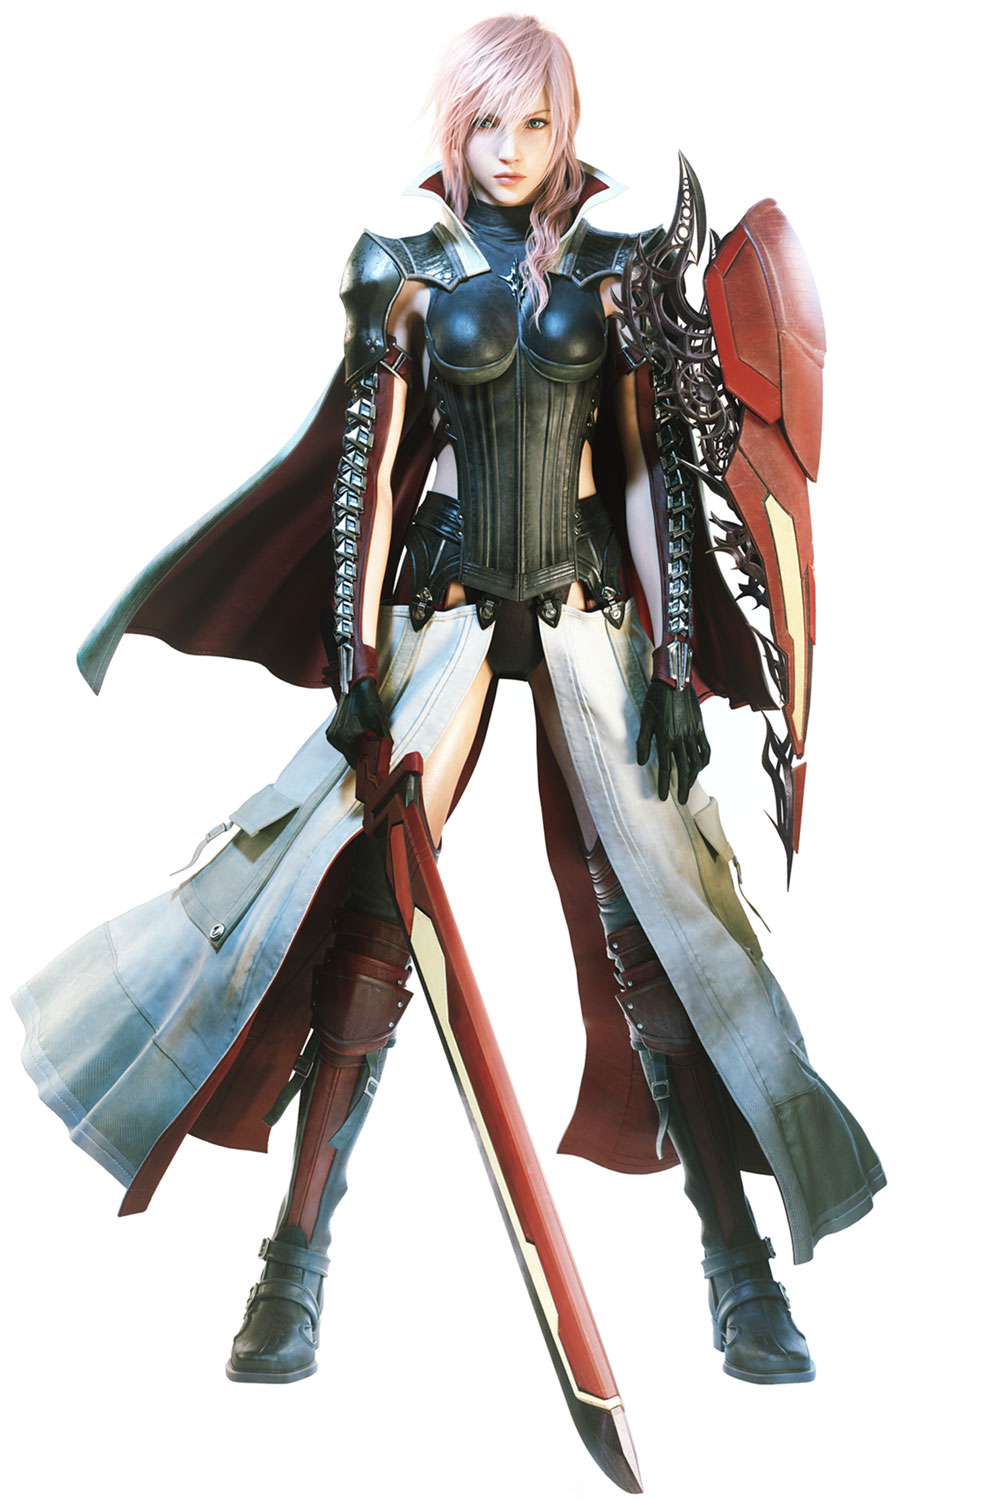 Lightning Returns - Final Fantasy XIII - Personagem Principal com espada